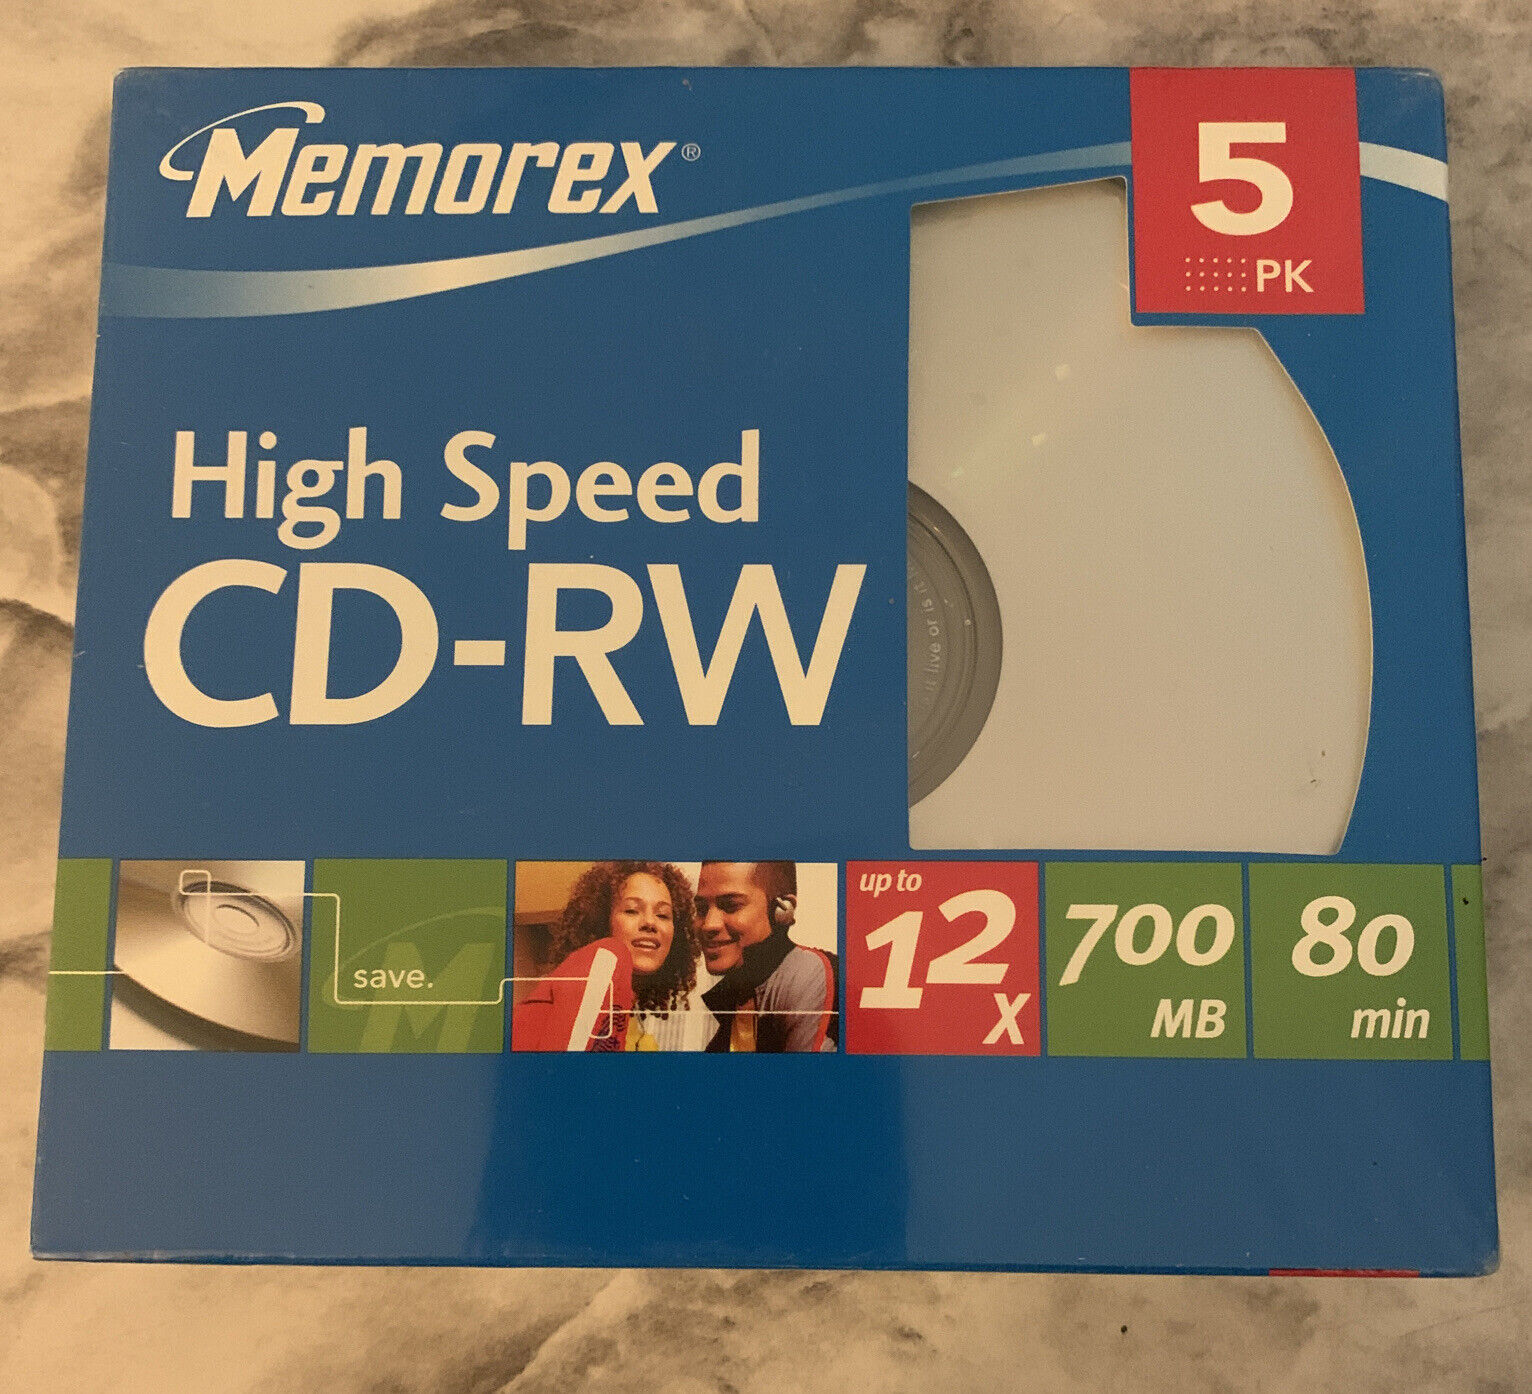 Memorex High Speed CD-RW 5 Pack